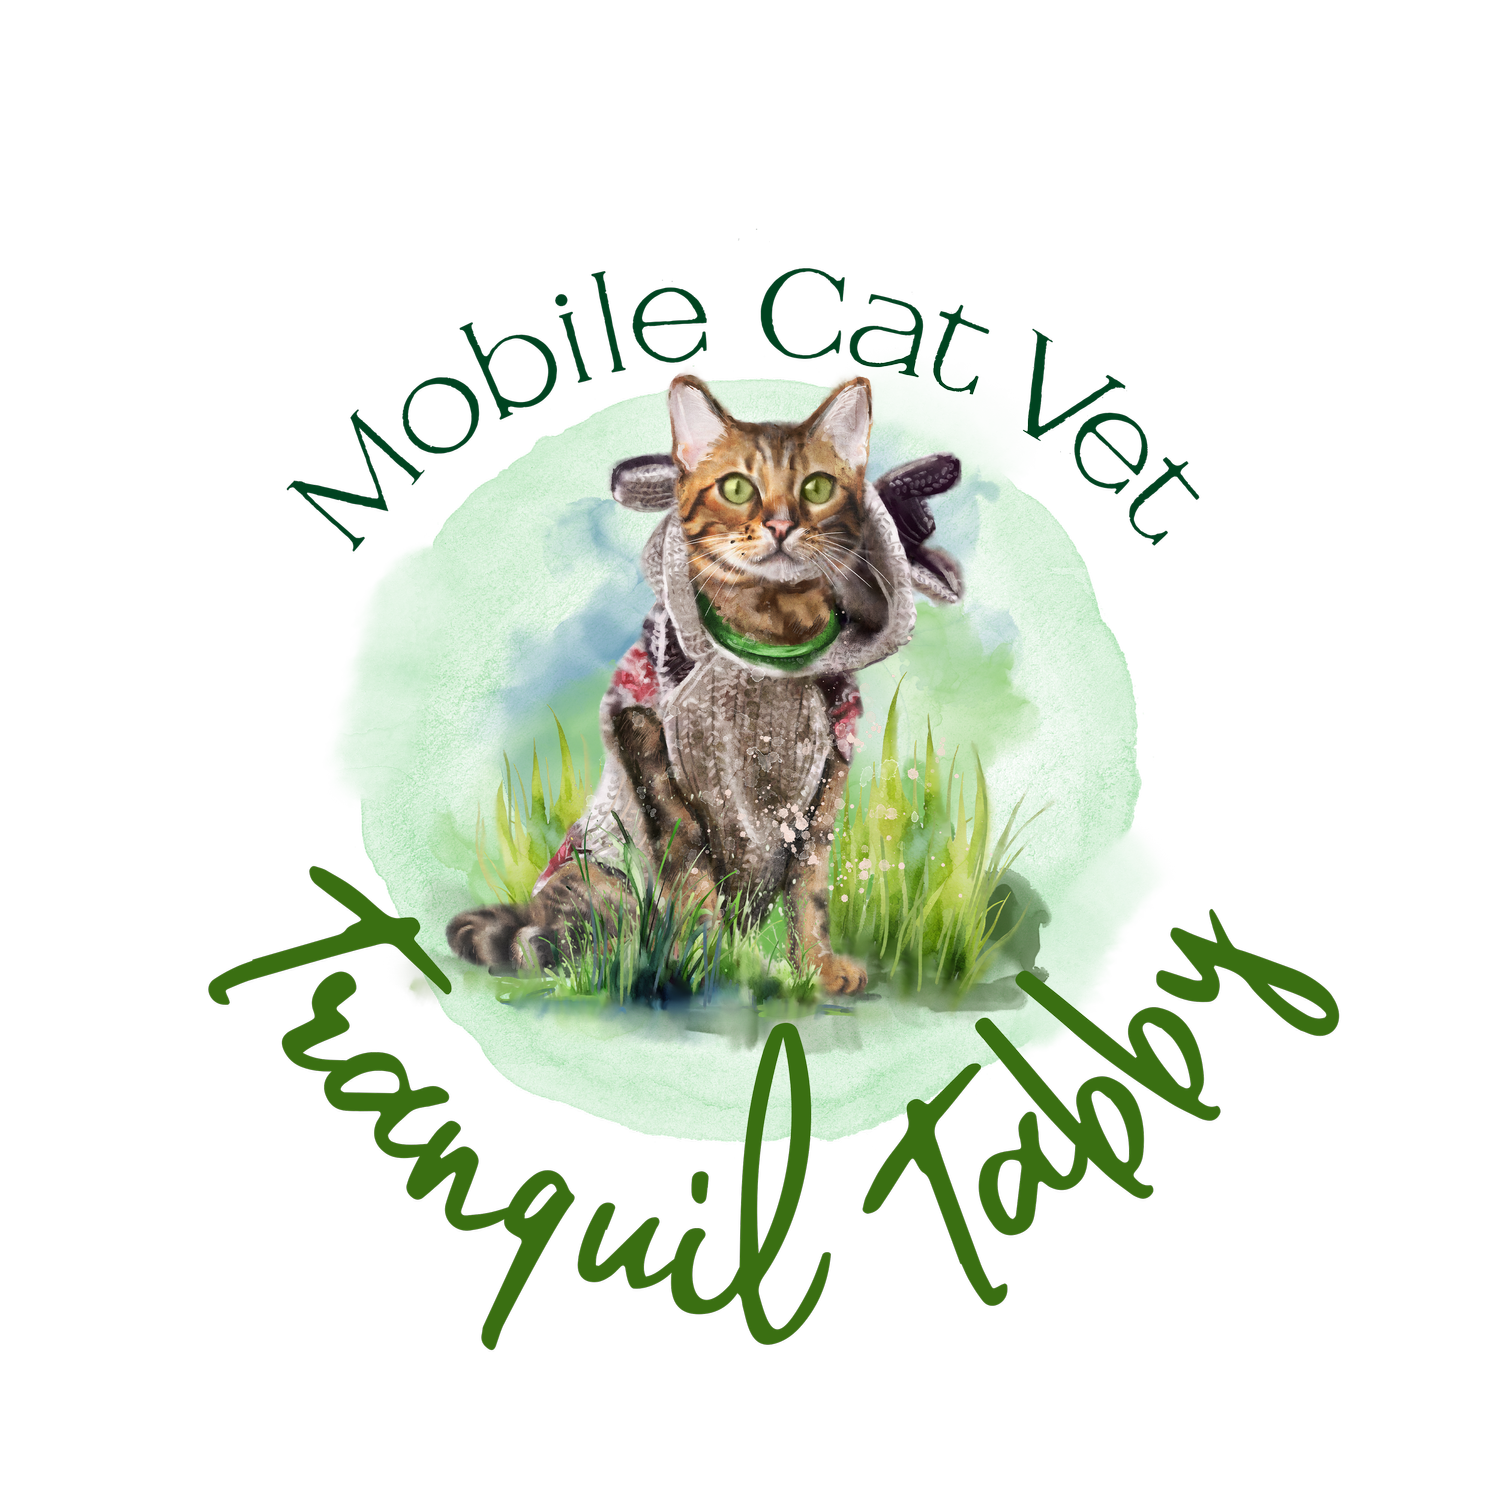 Tranquil Tabby Mobile Cat Vet